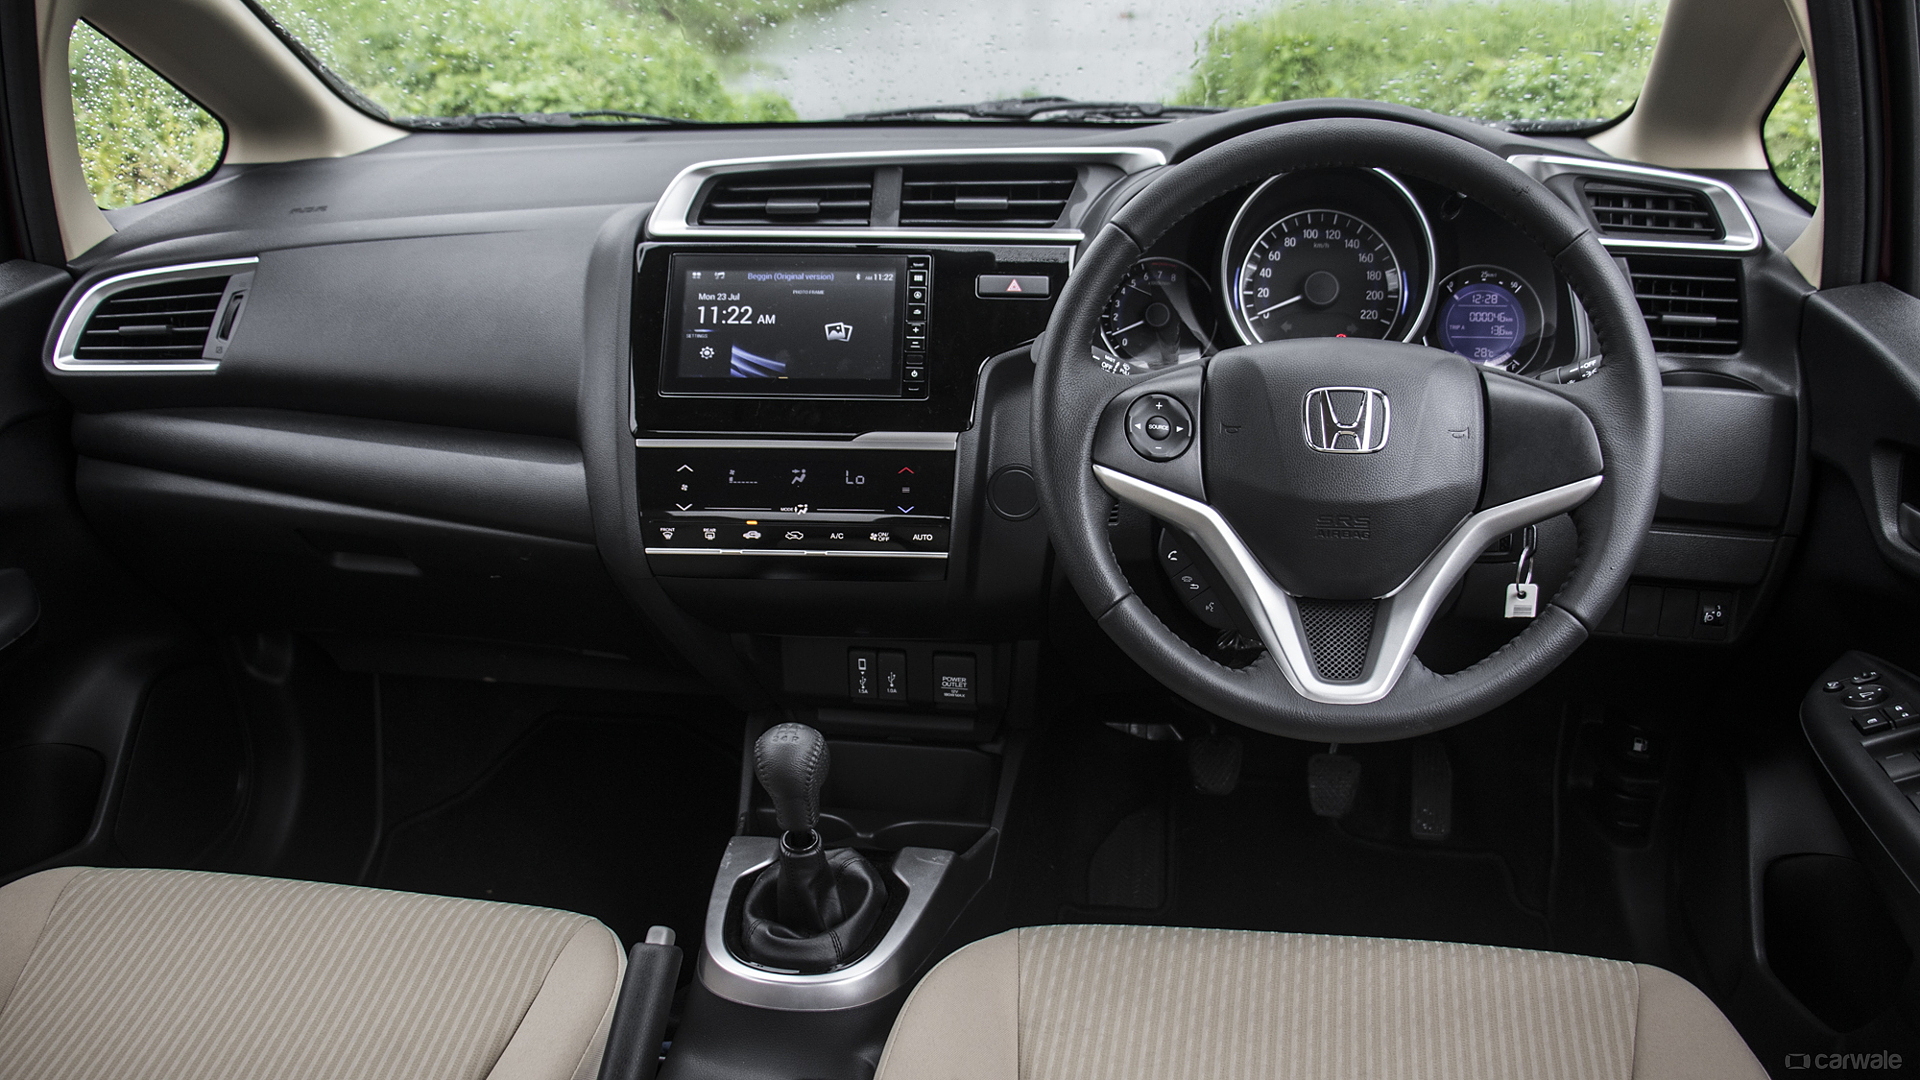  Honda  Jazz  Photo Interior  Image CarWale